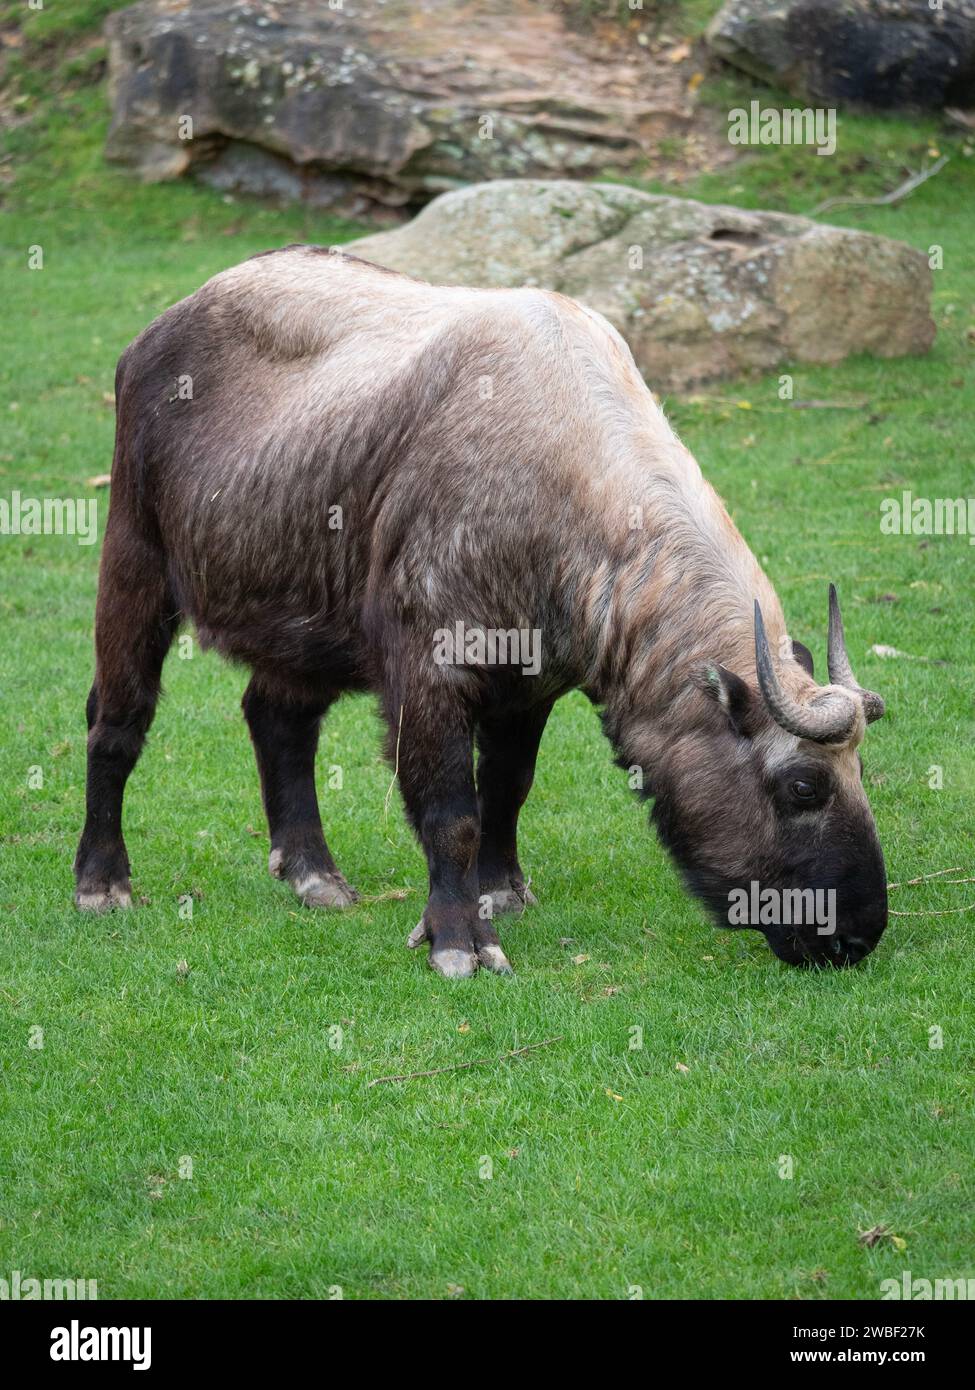 Un animale addomesticato in piedi nell'erba verde lussureggiante, che pascolava tranquillamente sulla vegetazione Foto Stock